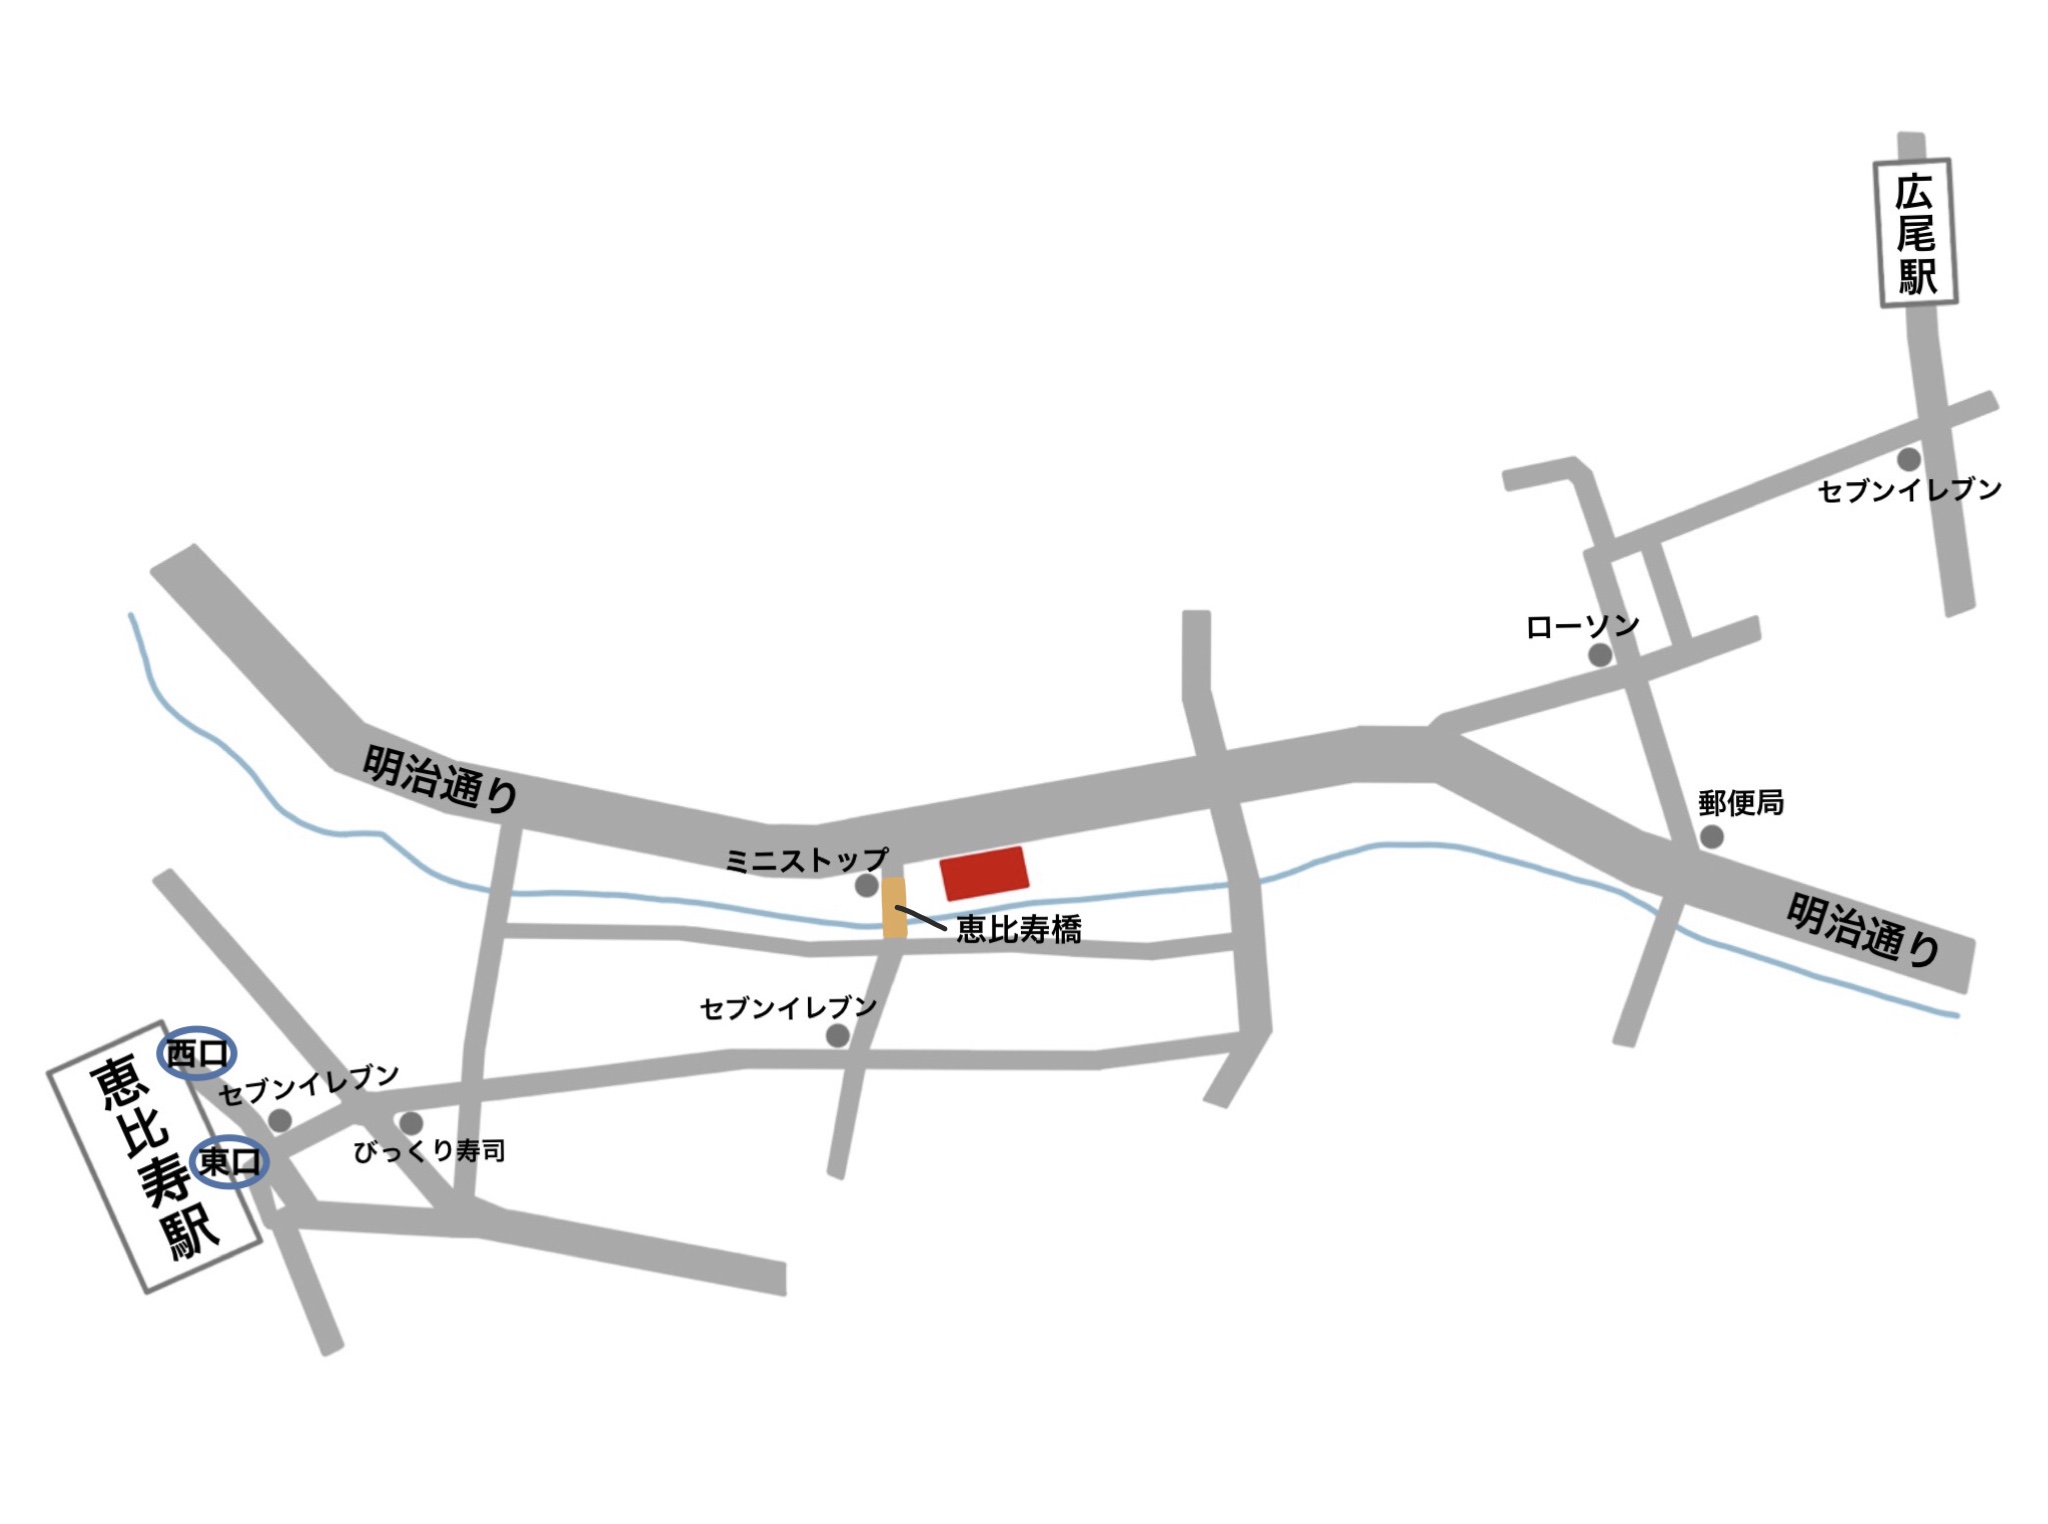 石川税理士事務所 簡略地図